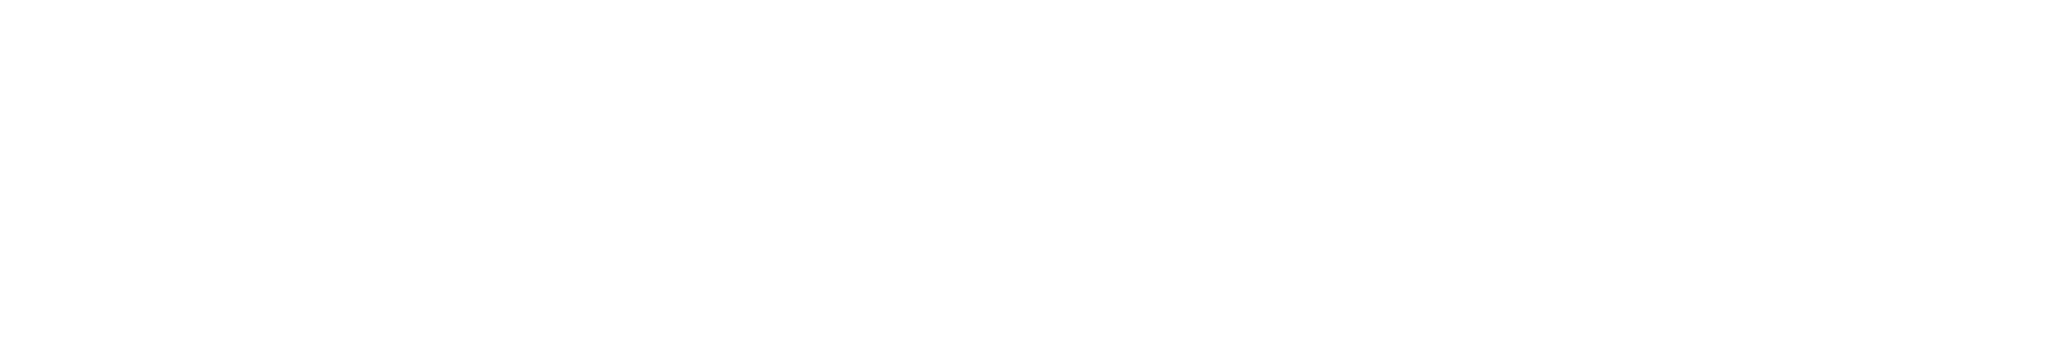 DMG | Daniel Management Matters logo